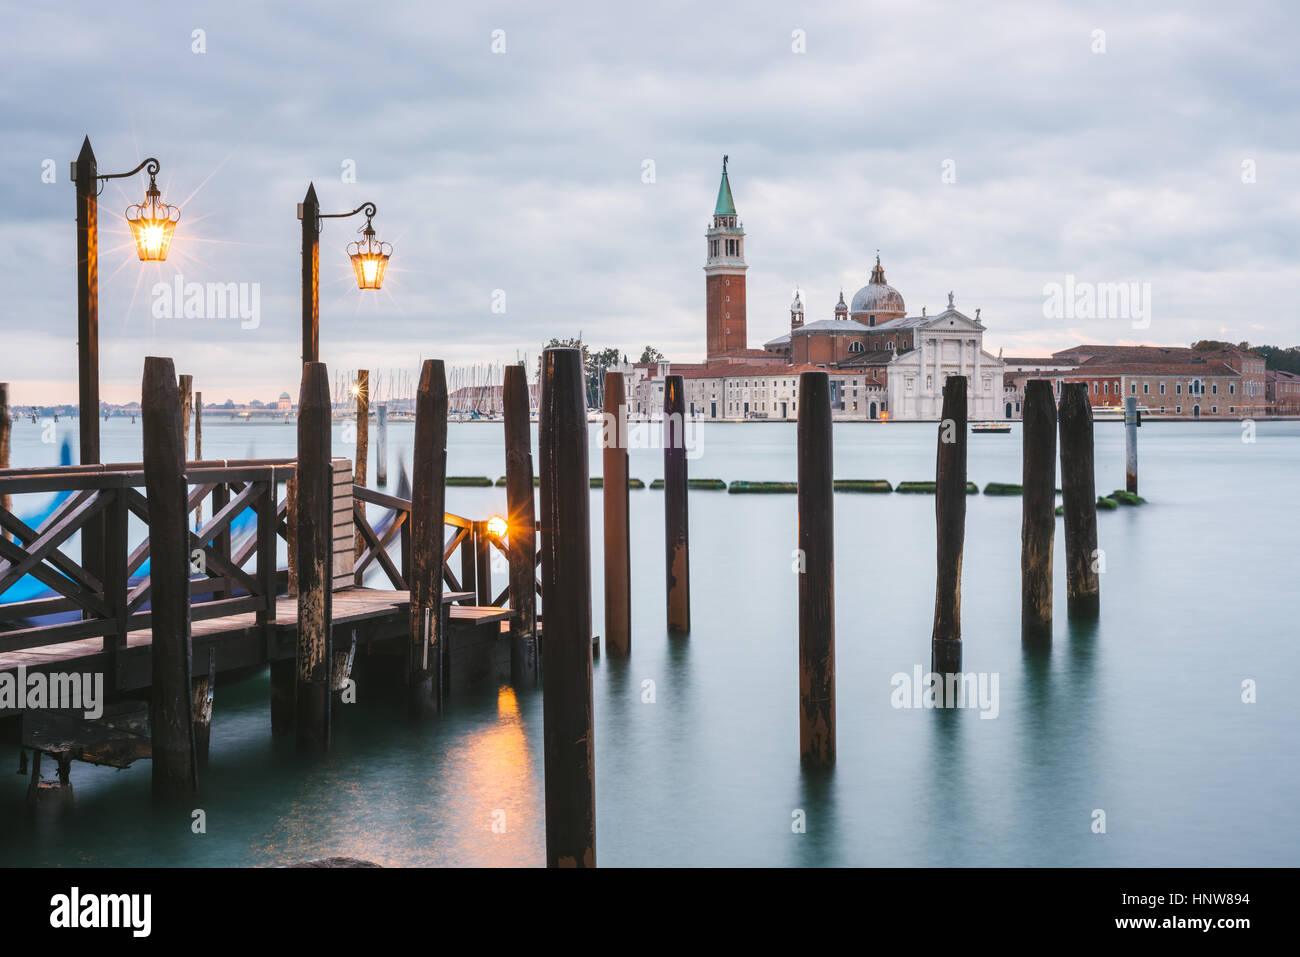 Pier in Grand Canal, San Giorgio Maggiore Island in background, Venice, Italy Stock Photo